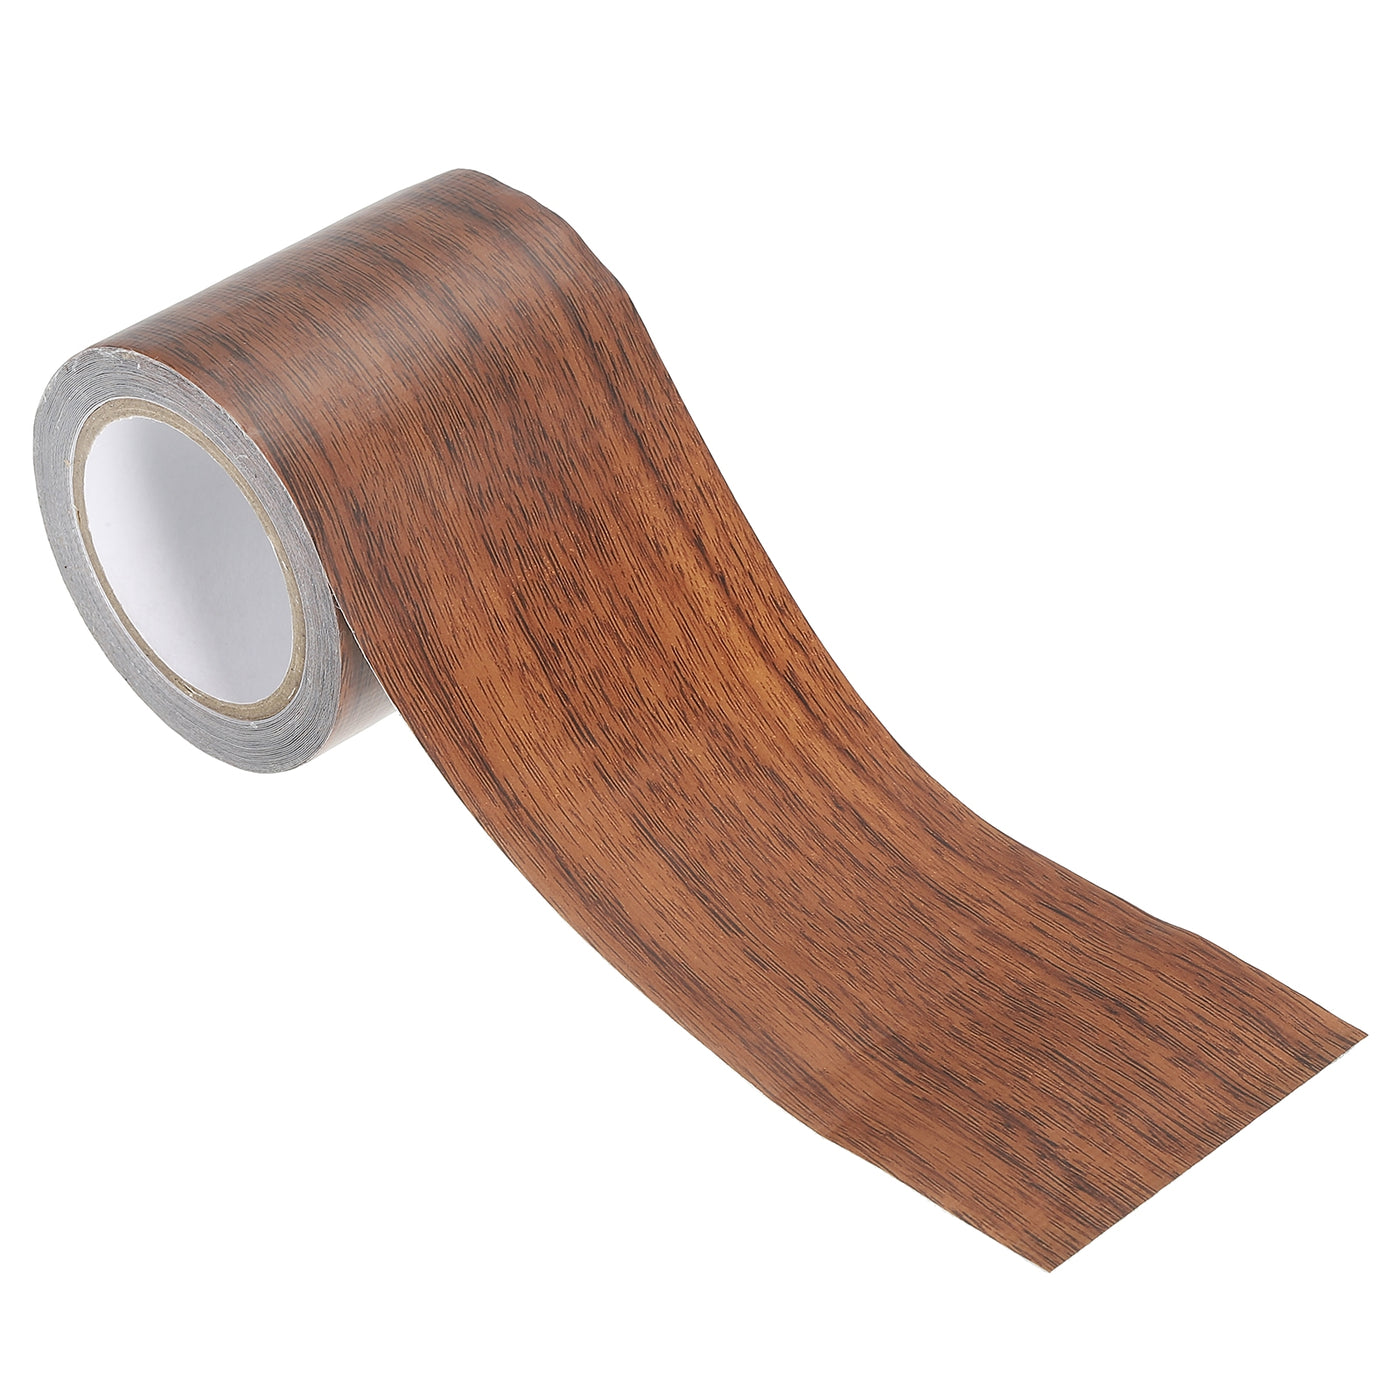 Harfington Wood Grain Repair Tape 2.2"X15', Self Adhesive Realistic Patch, Dark Brown Oak